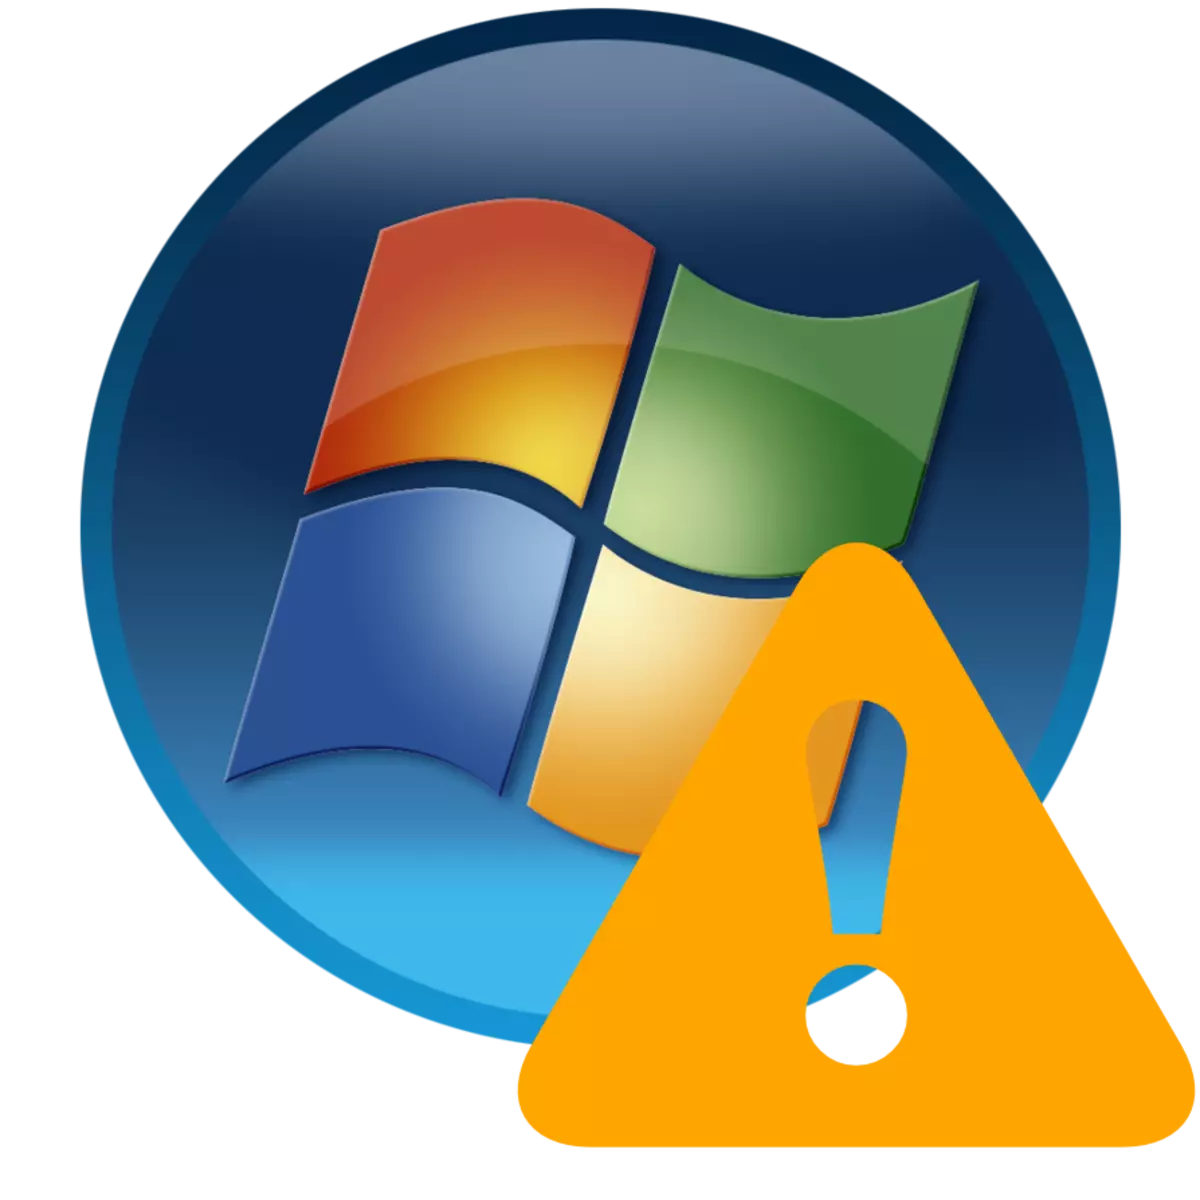 Windows 7деги иштөө тутумунун катасы жок